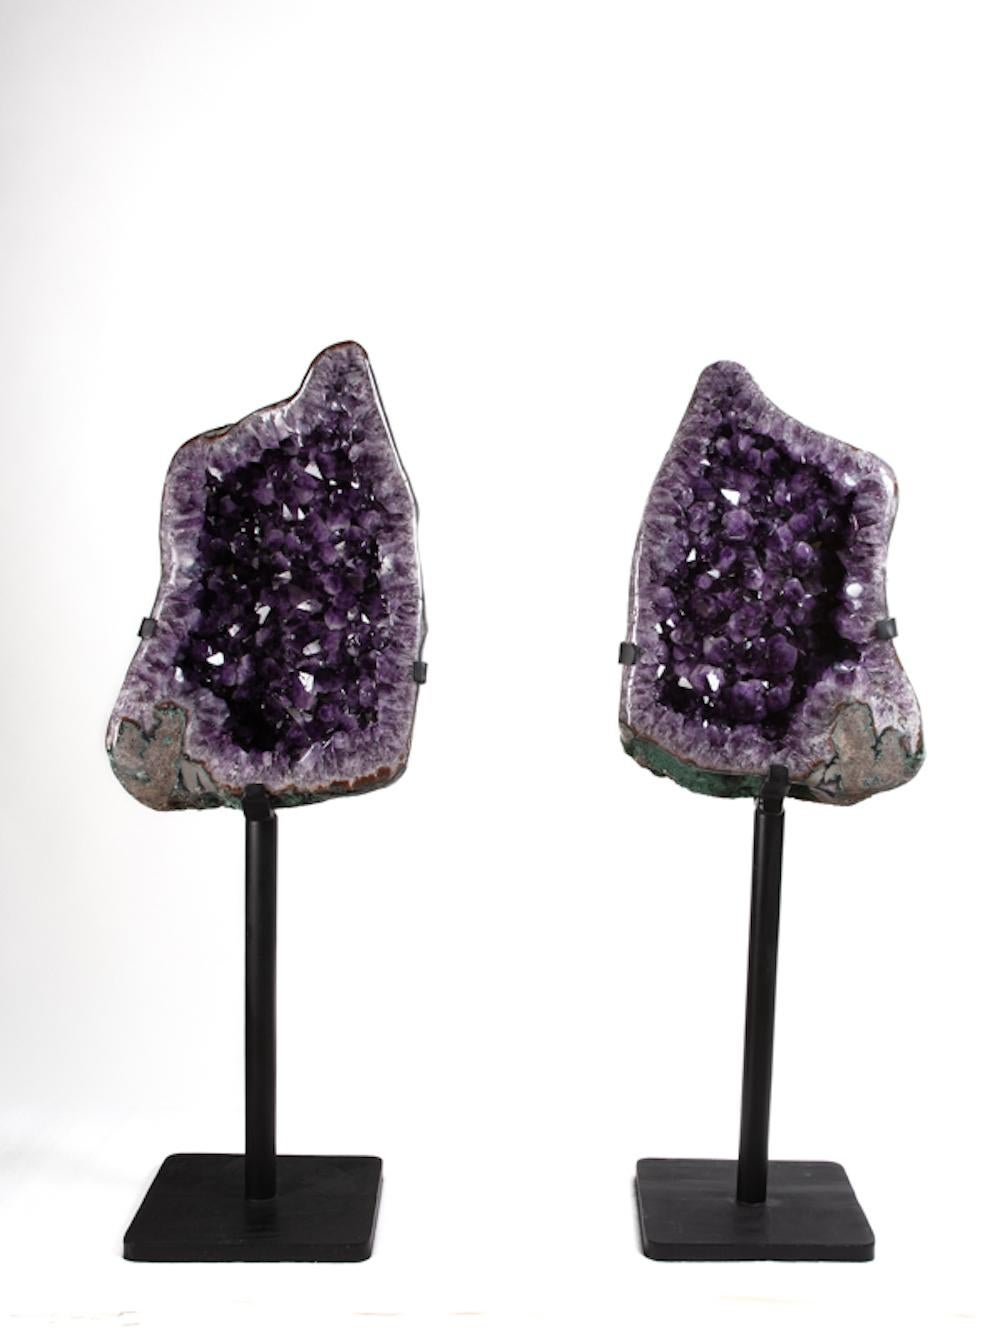 240kg (106kg und 101kg sind die Stücke ohne die Ständer.). 

Amethyst ist ein Quarz, der Spuren von Manganoxid enthält, die für die violette Farbe verantwortlich sind. Amethyst ist in der Regel in Hohlräumen von Vulkangestein zu finden und kommt